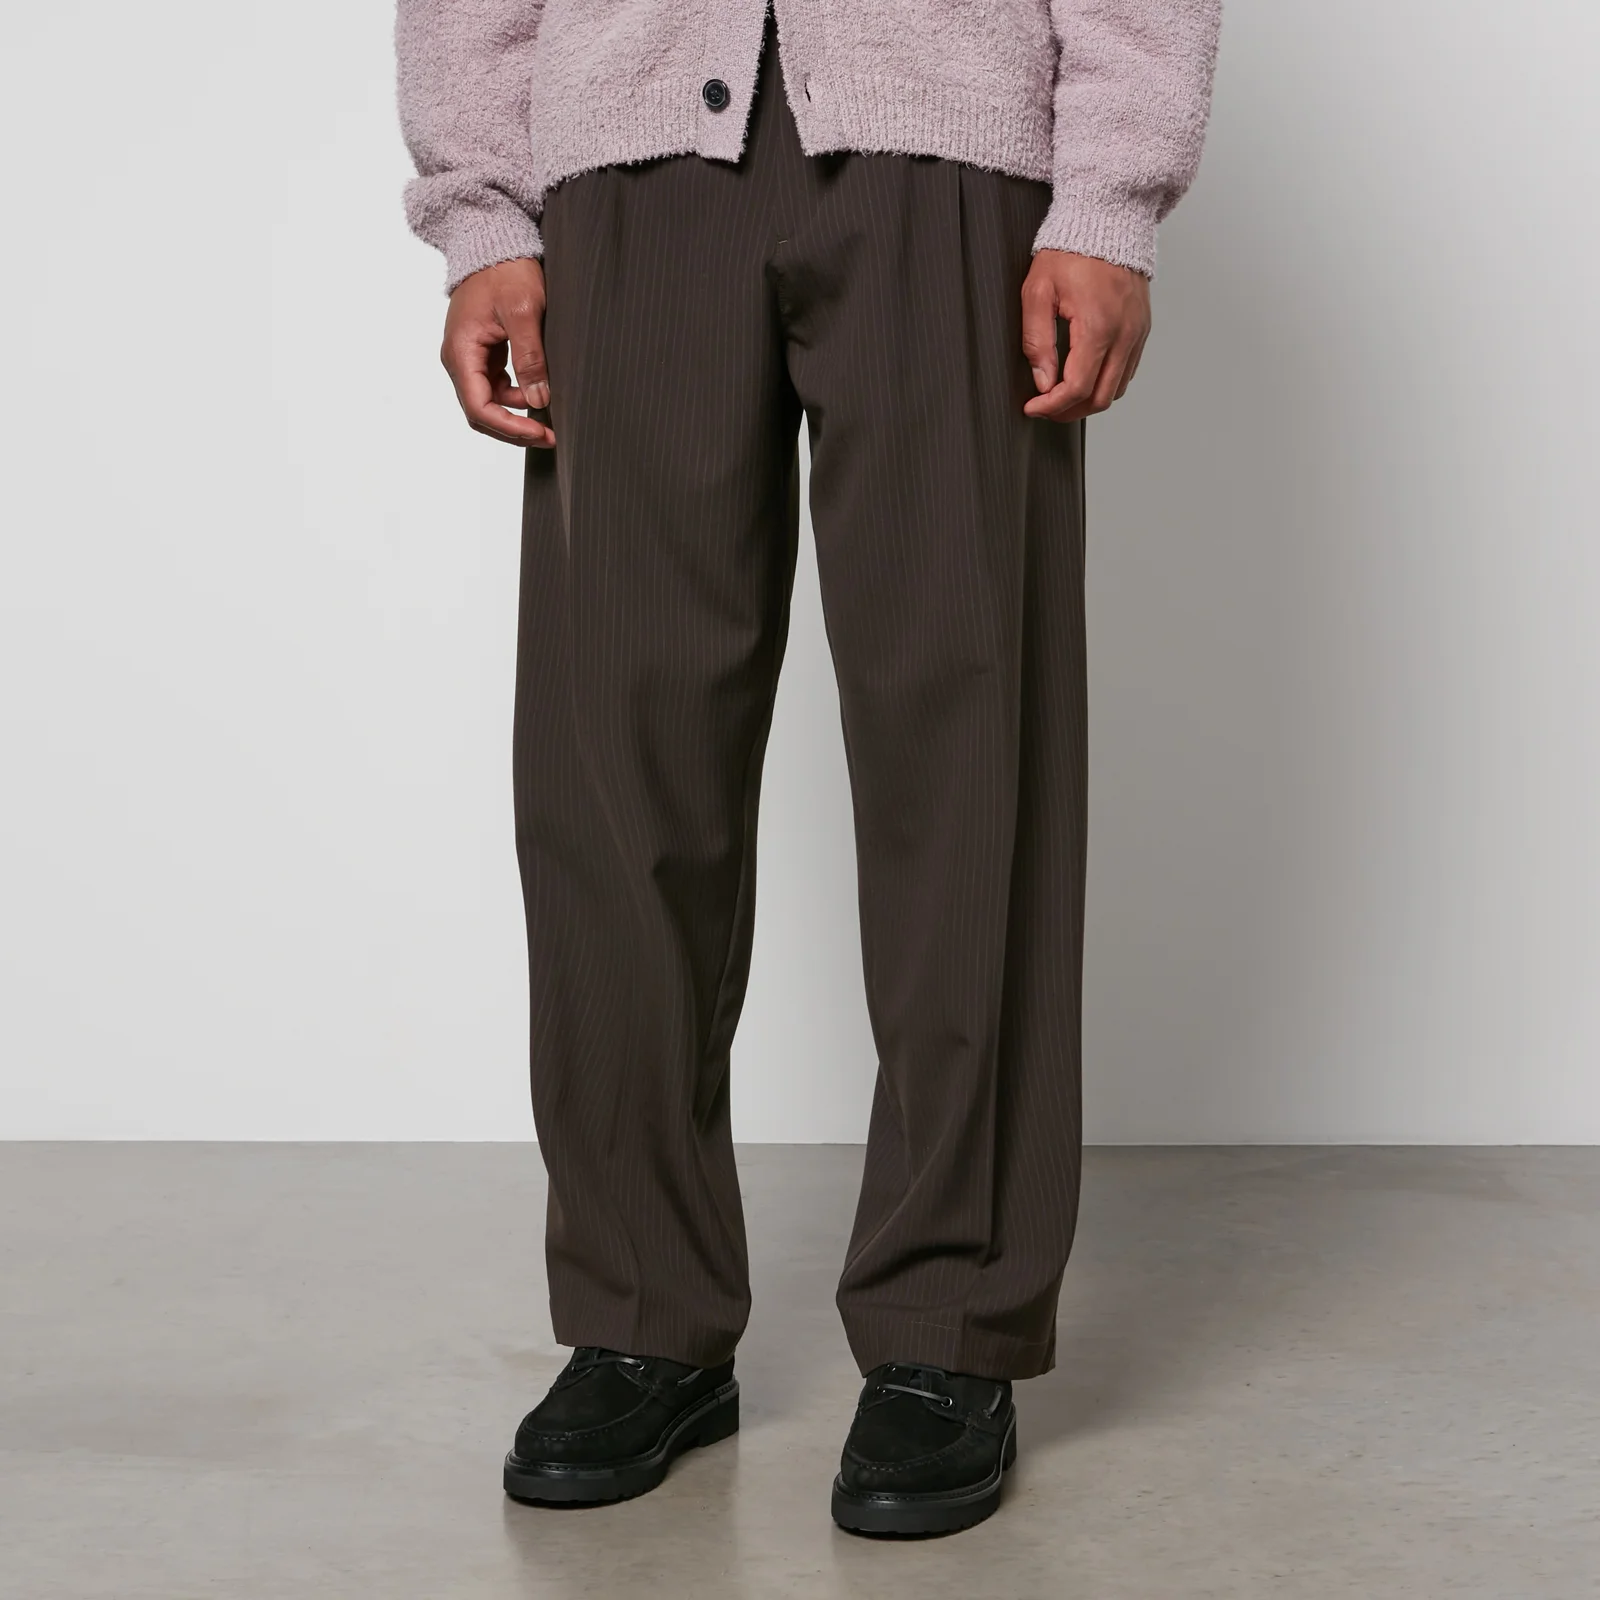 mfpen Men's Pinstriped Wool Trousers Image 1